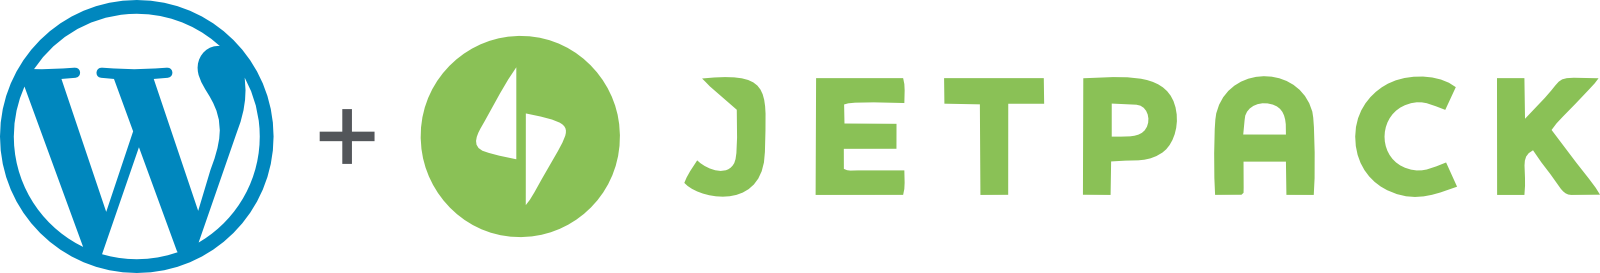 WordPress.com plus Jetpack logos